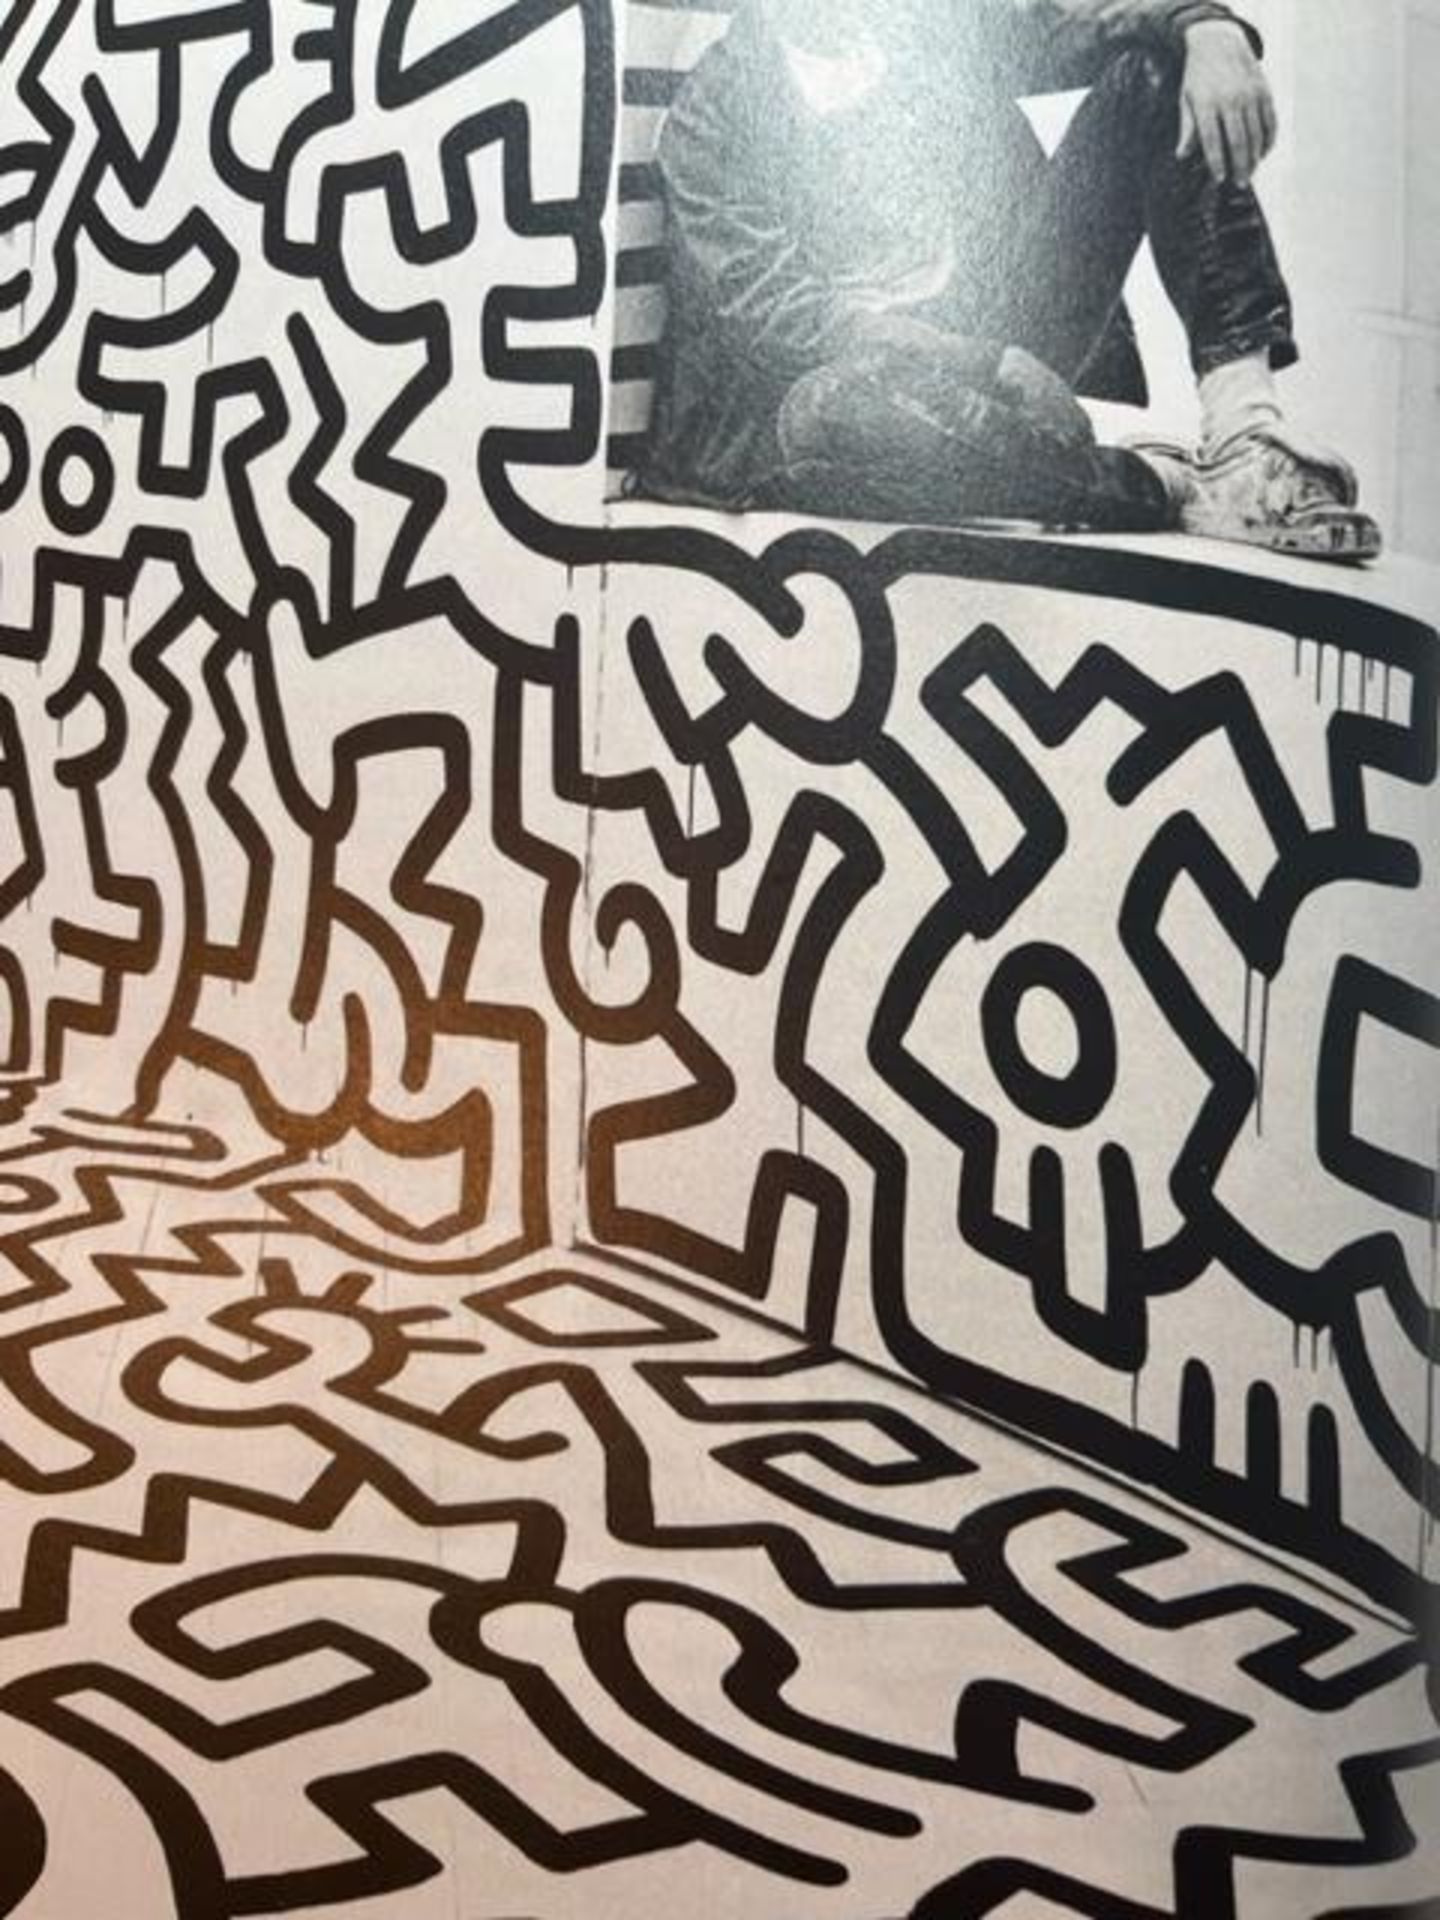 Keith Haring "Pop Shop" Print. - Bild 5 aus 6